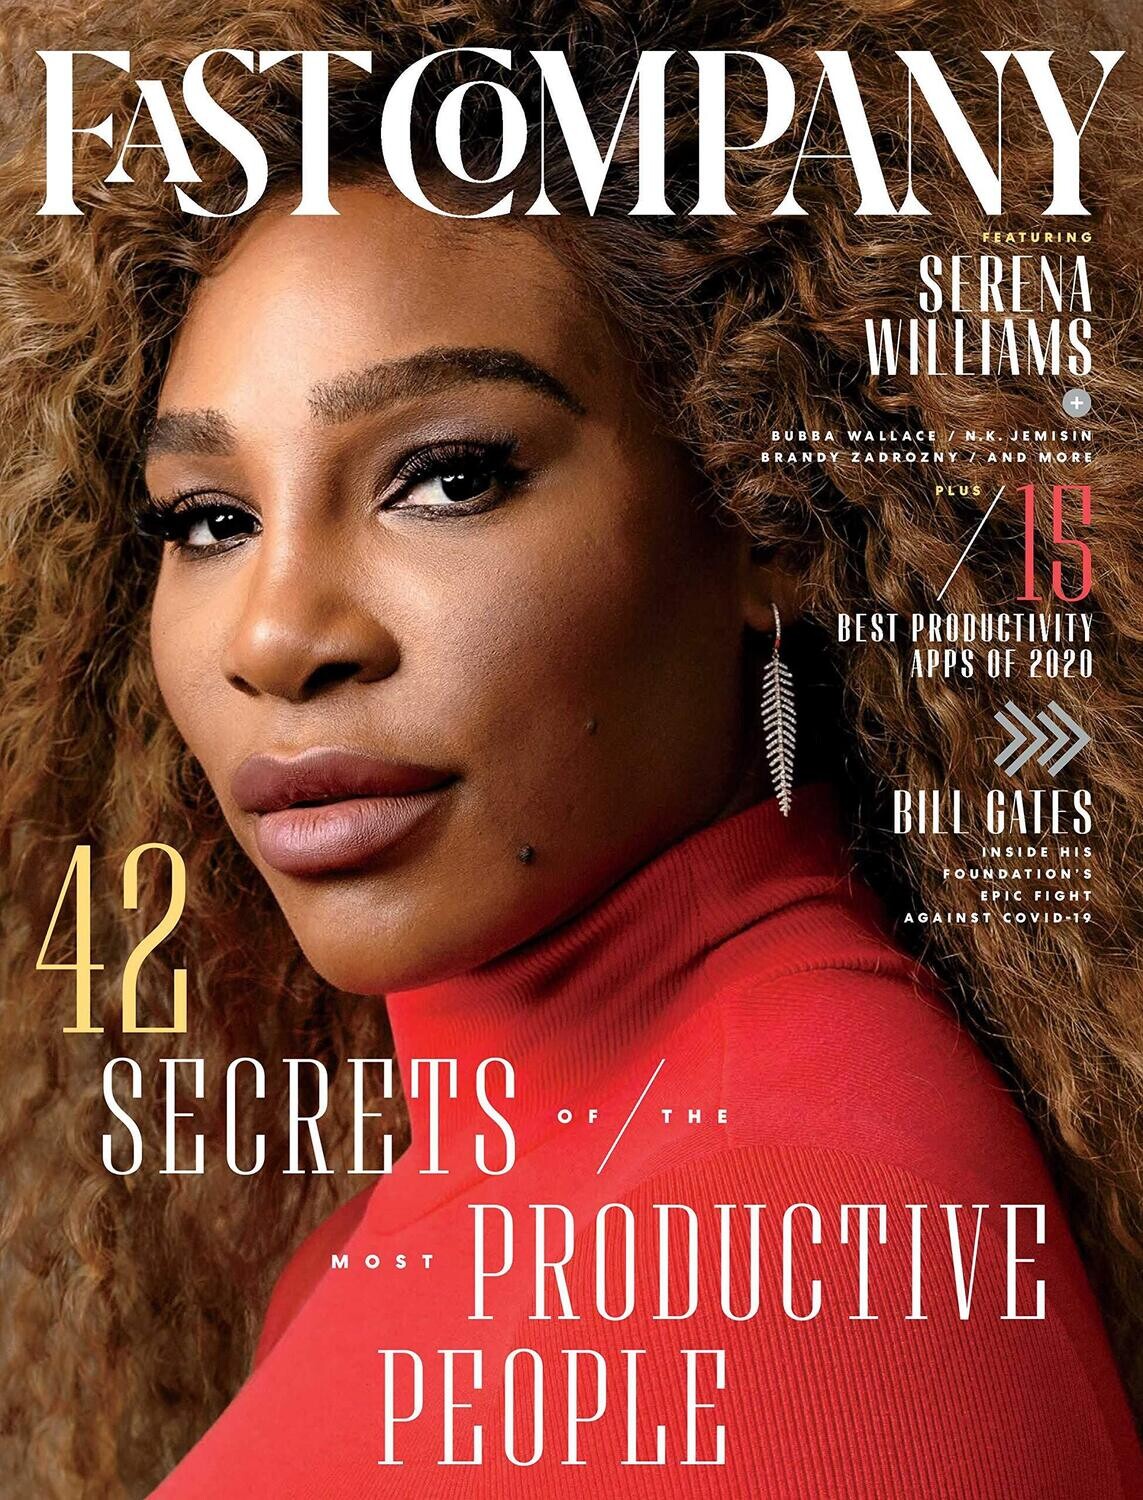 Fast Company Magazine #242 - Serena Williams